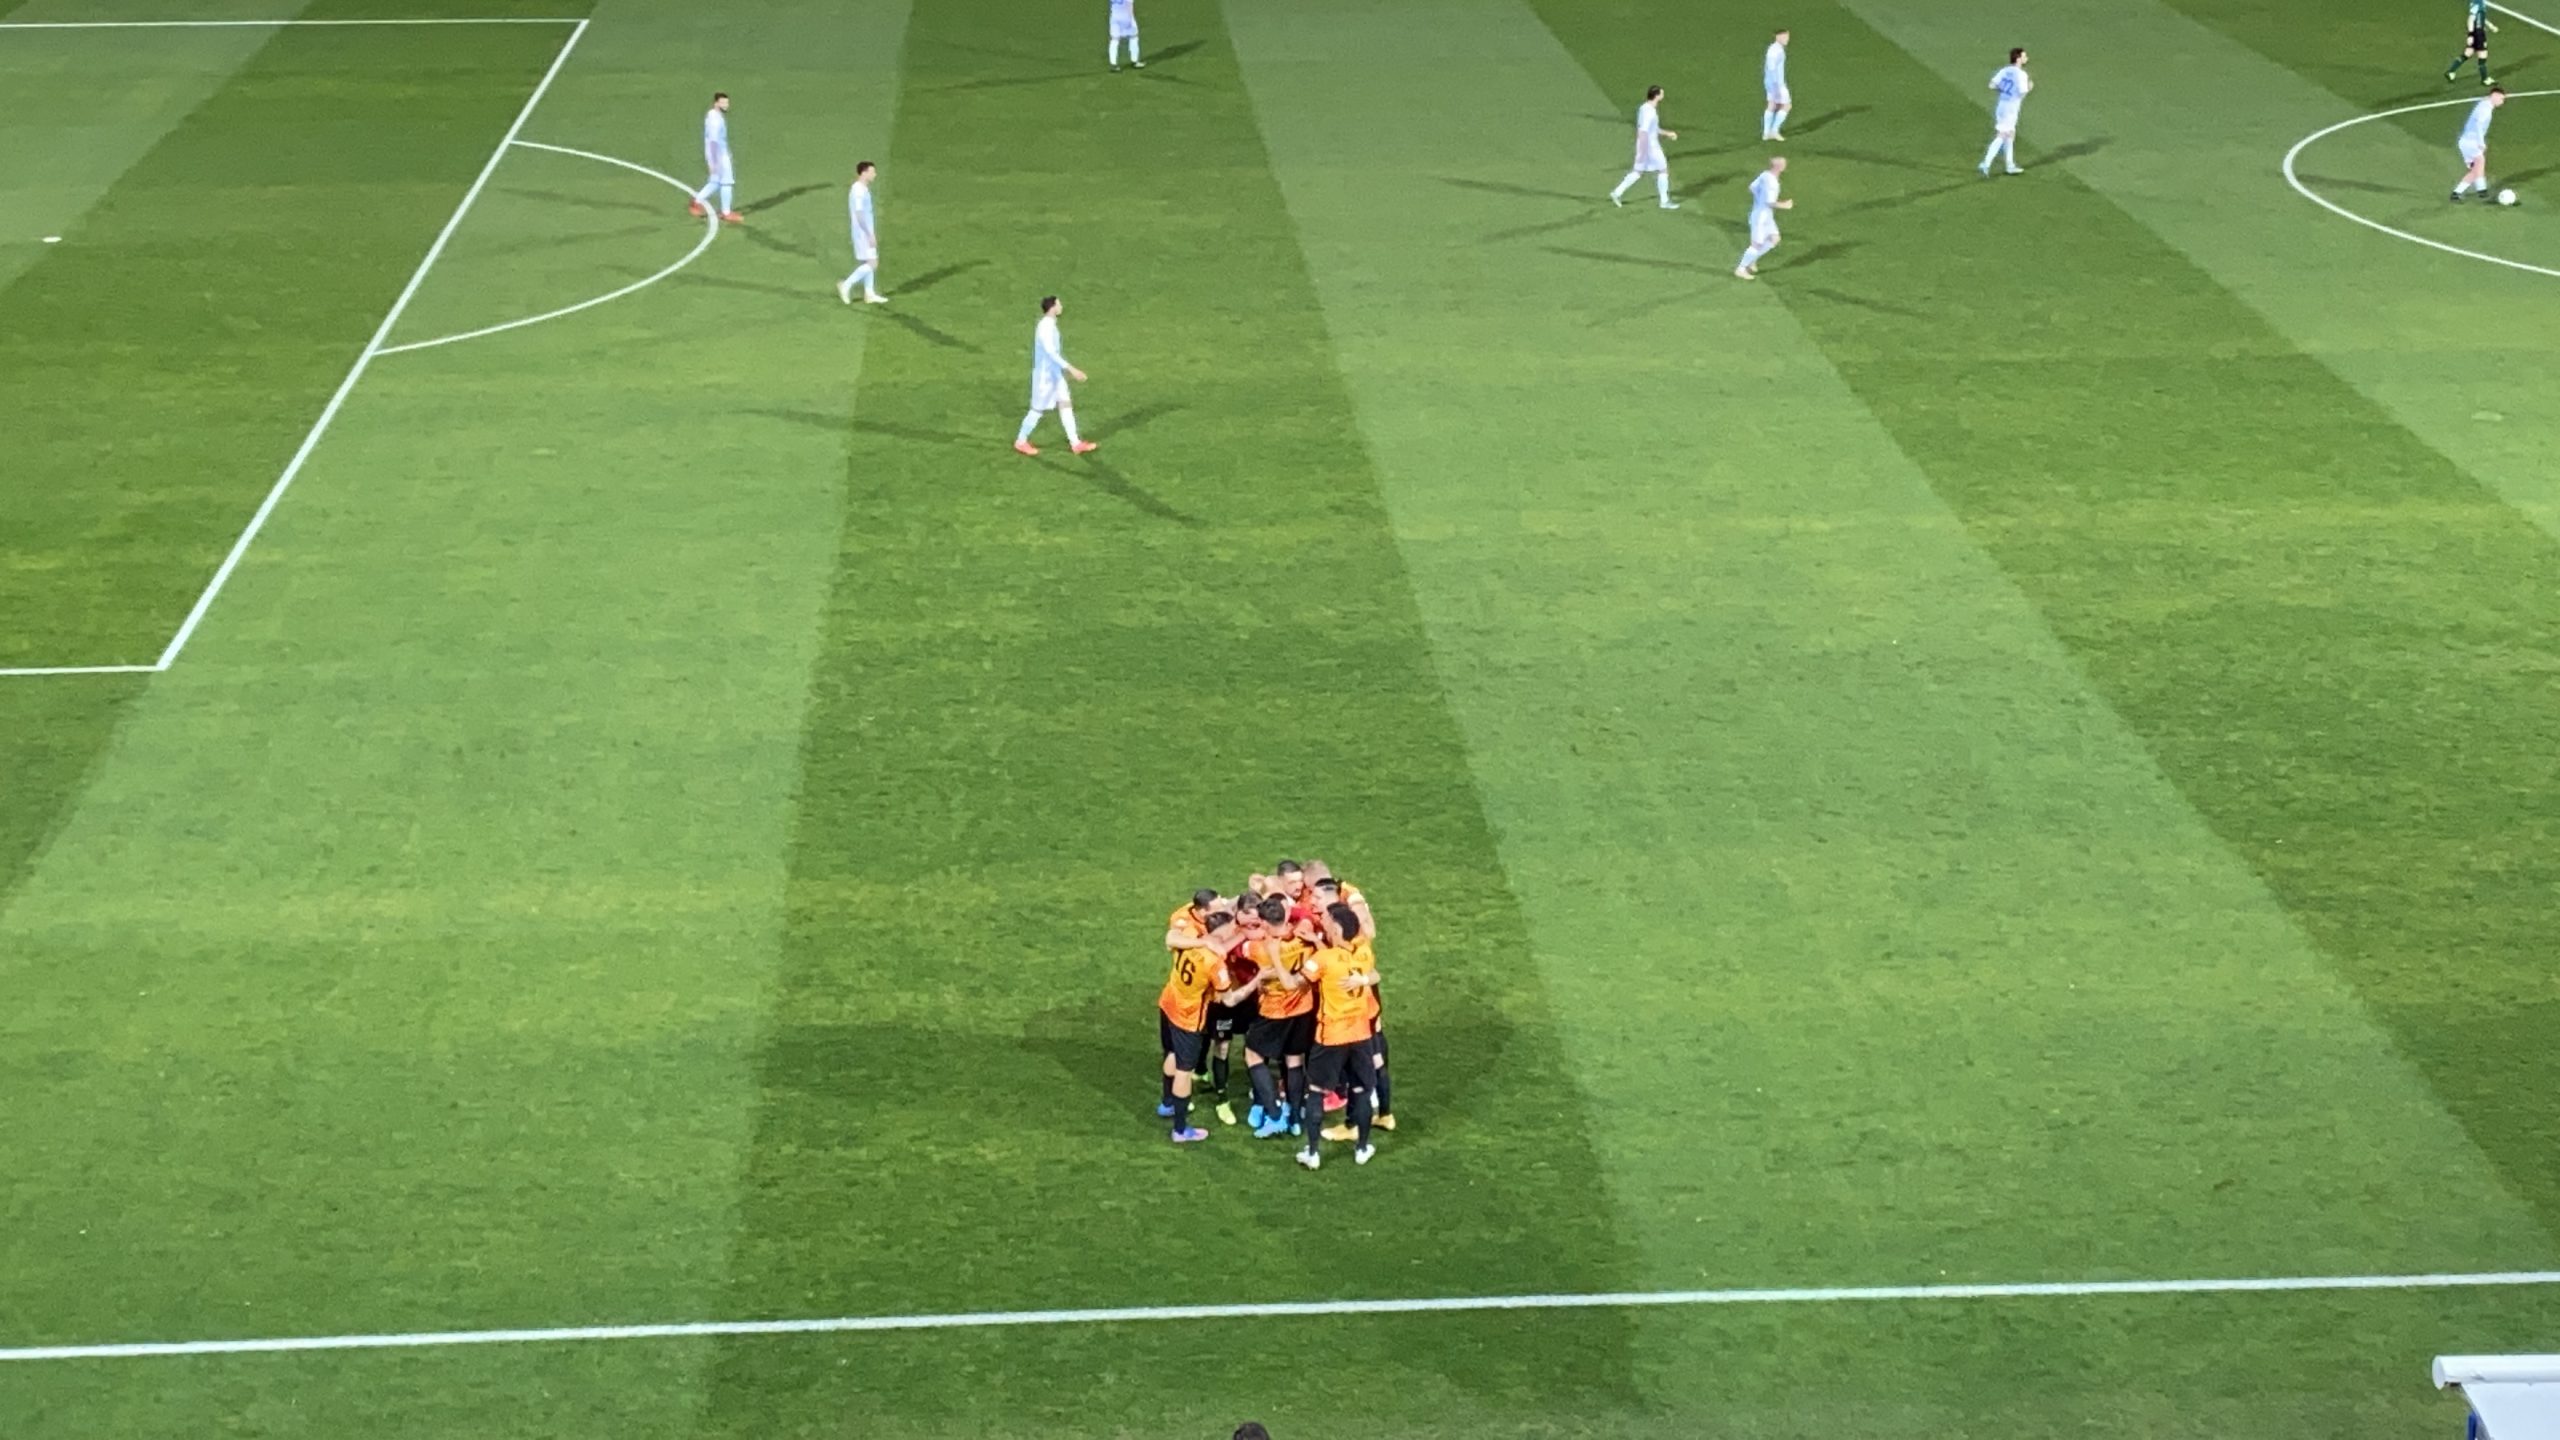 Benevento-Como: 5-0. La Strega torna a brillare. Pokerissimo per il rilancio giallorosso